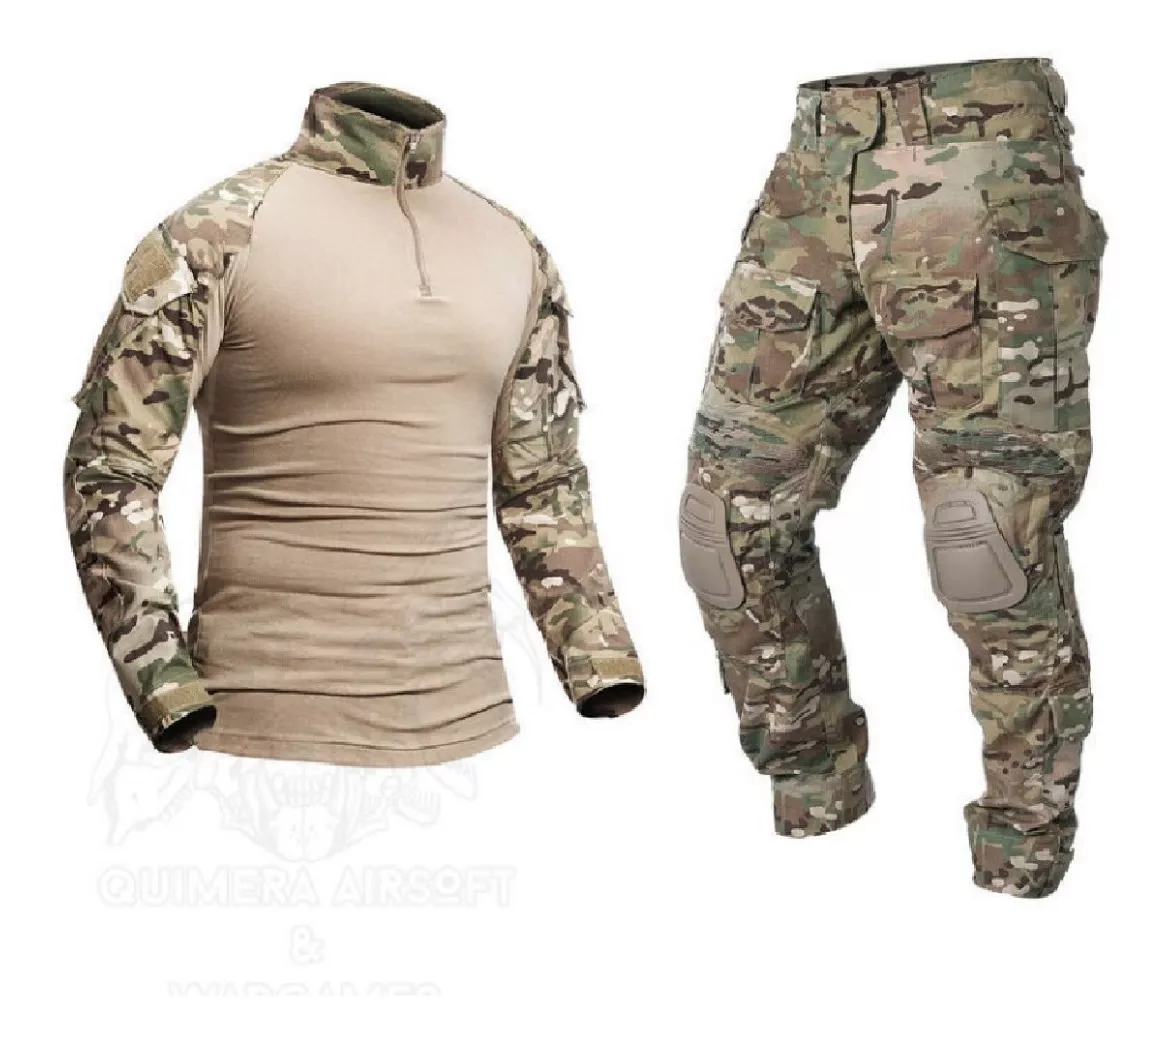 Tenida Combat Shirt Multicam Uniforme Airsof